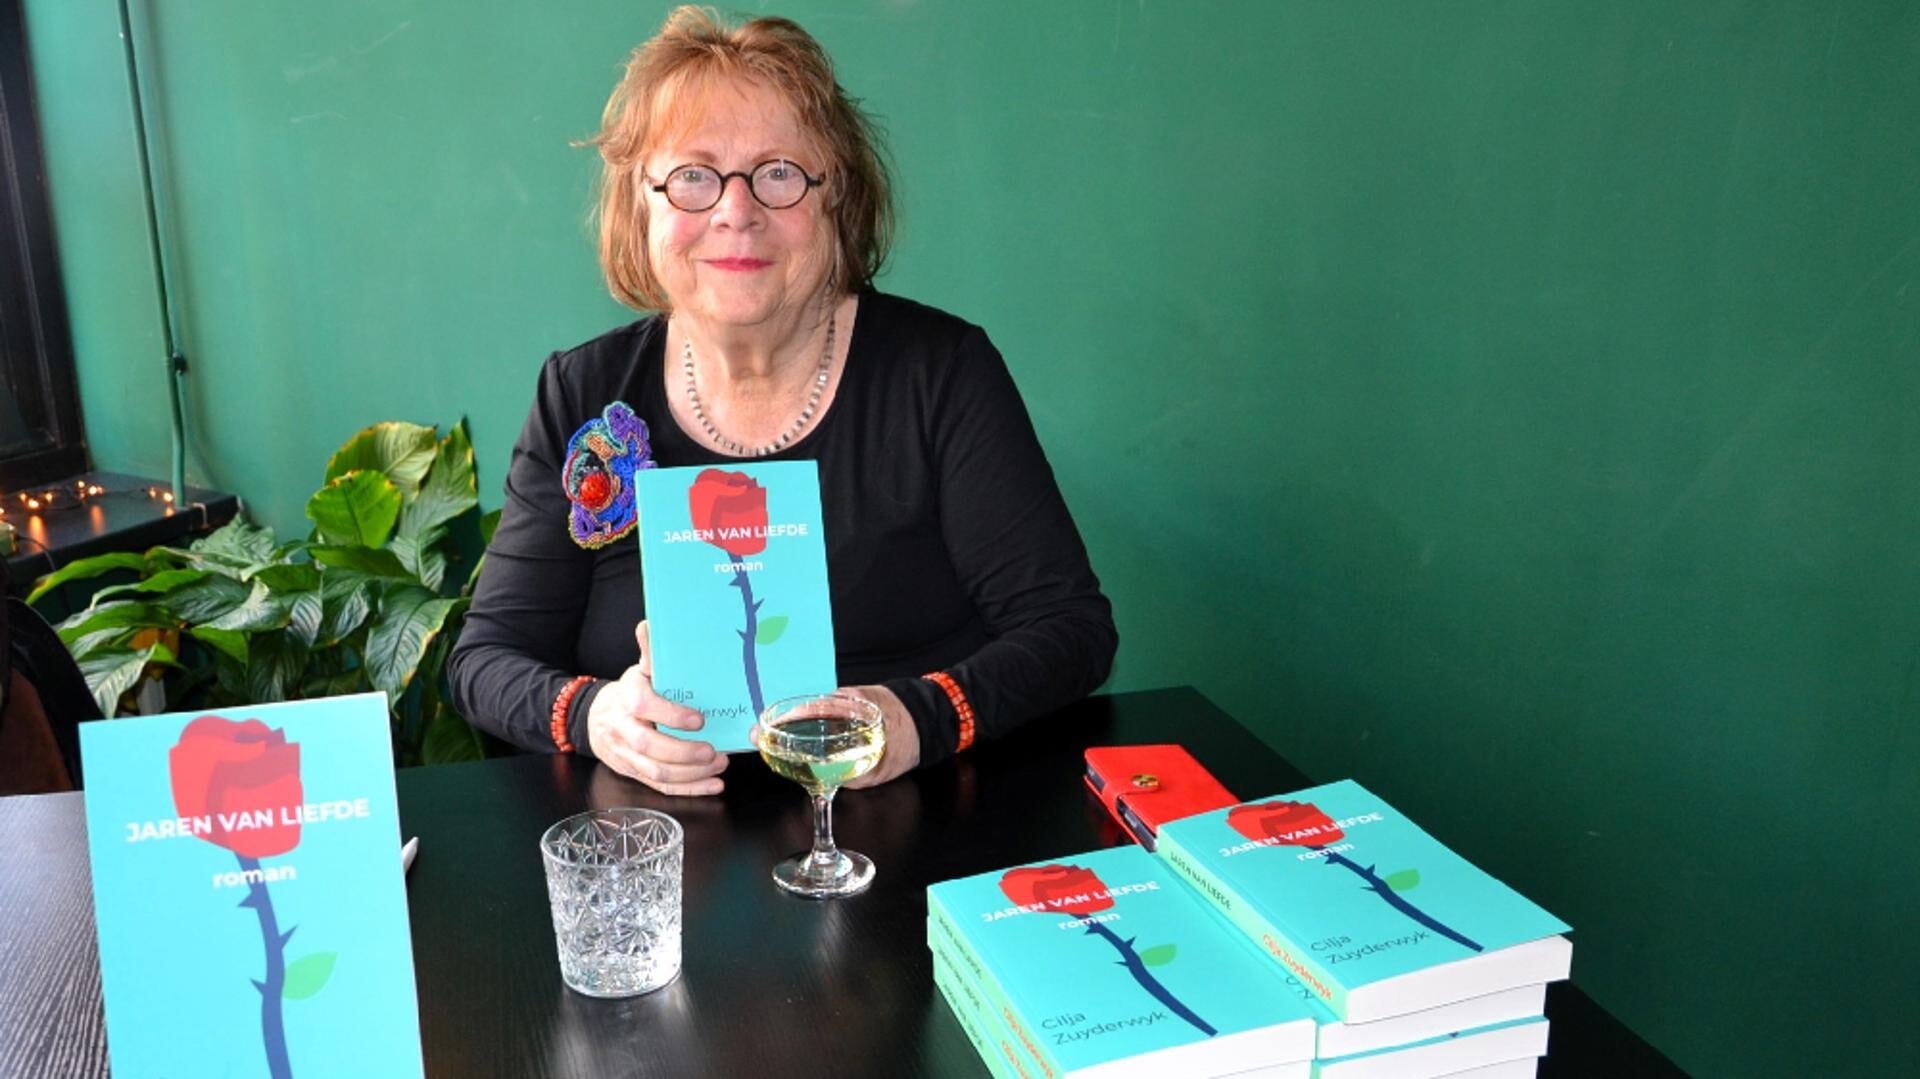 • Cilja Zuyderwijk met haar nieuwe boek 'Jaren van Liefde'.